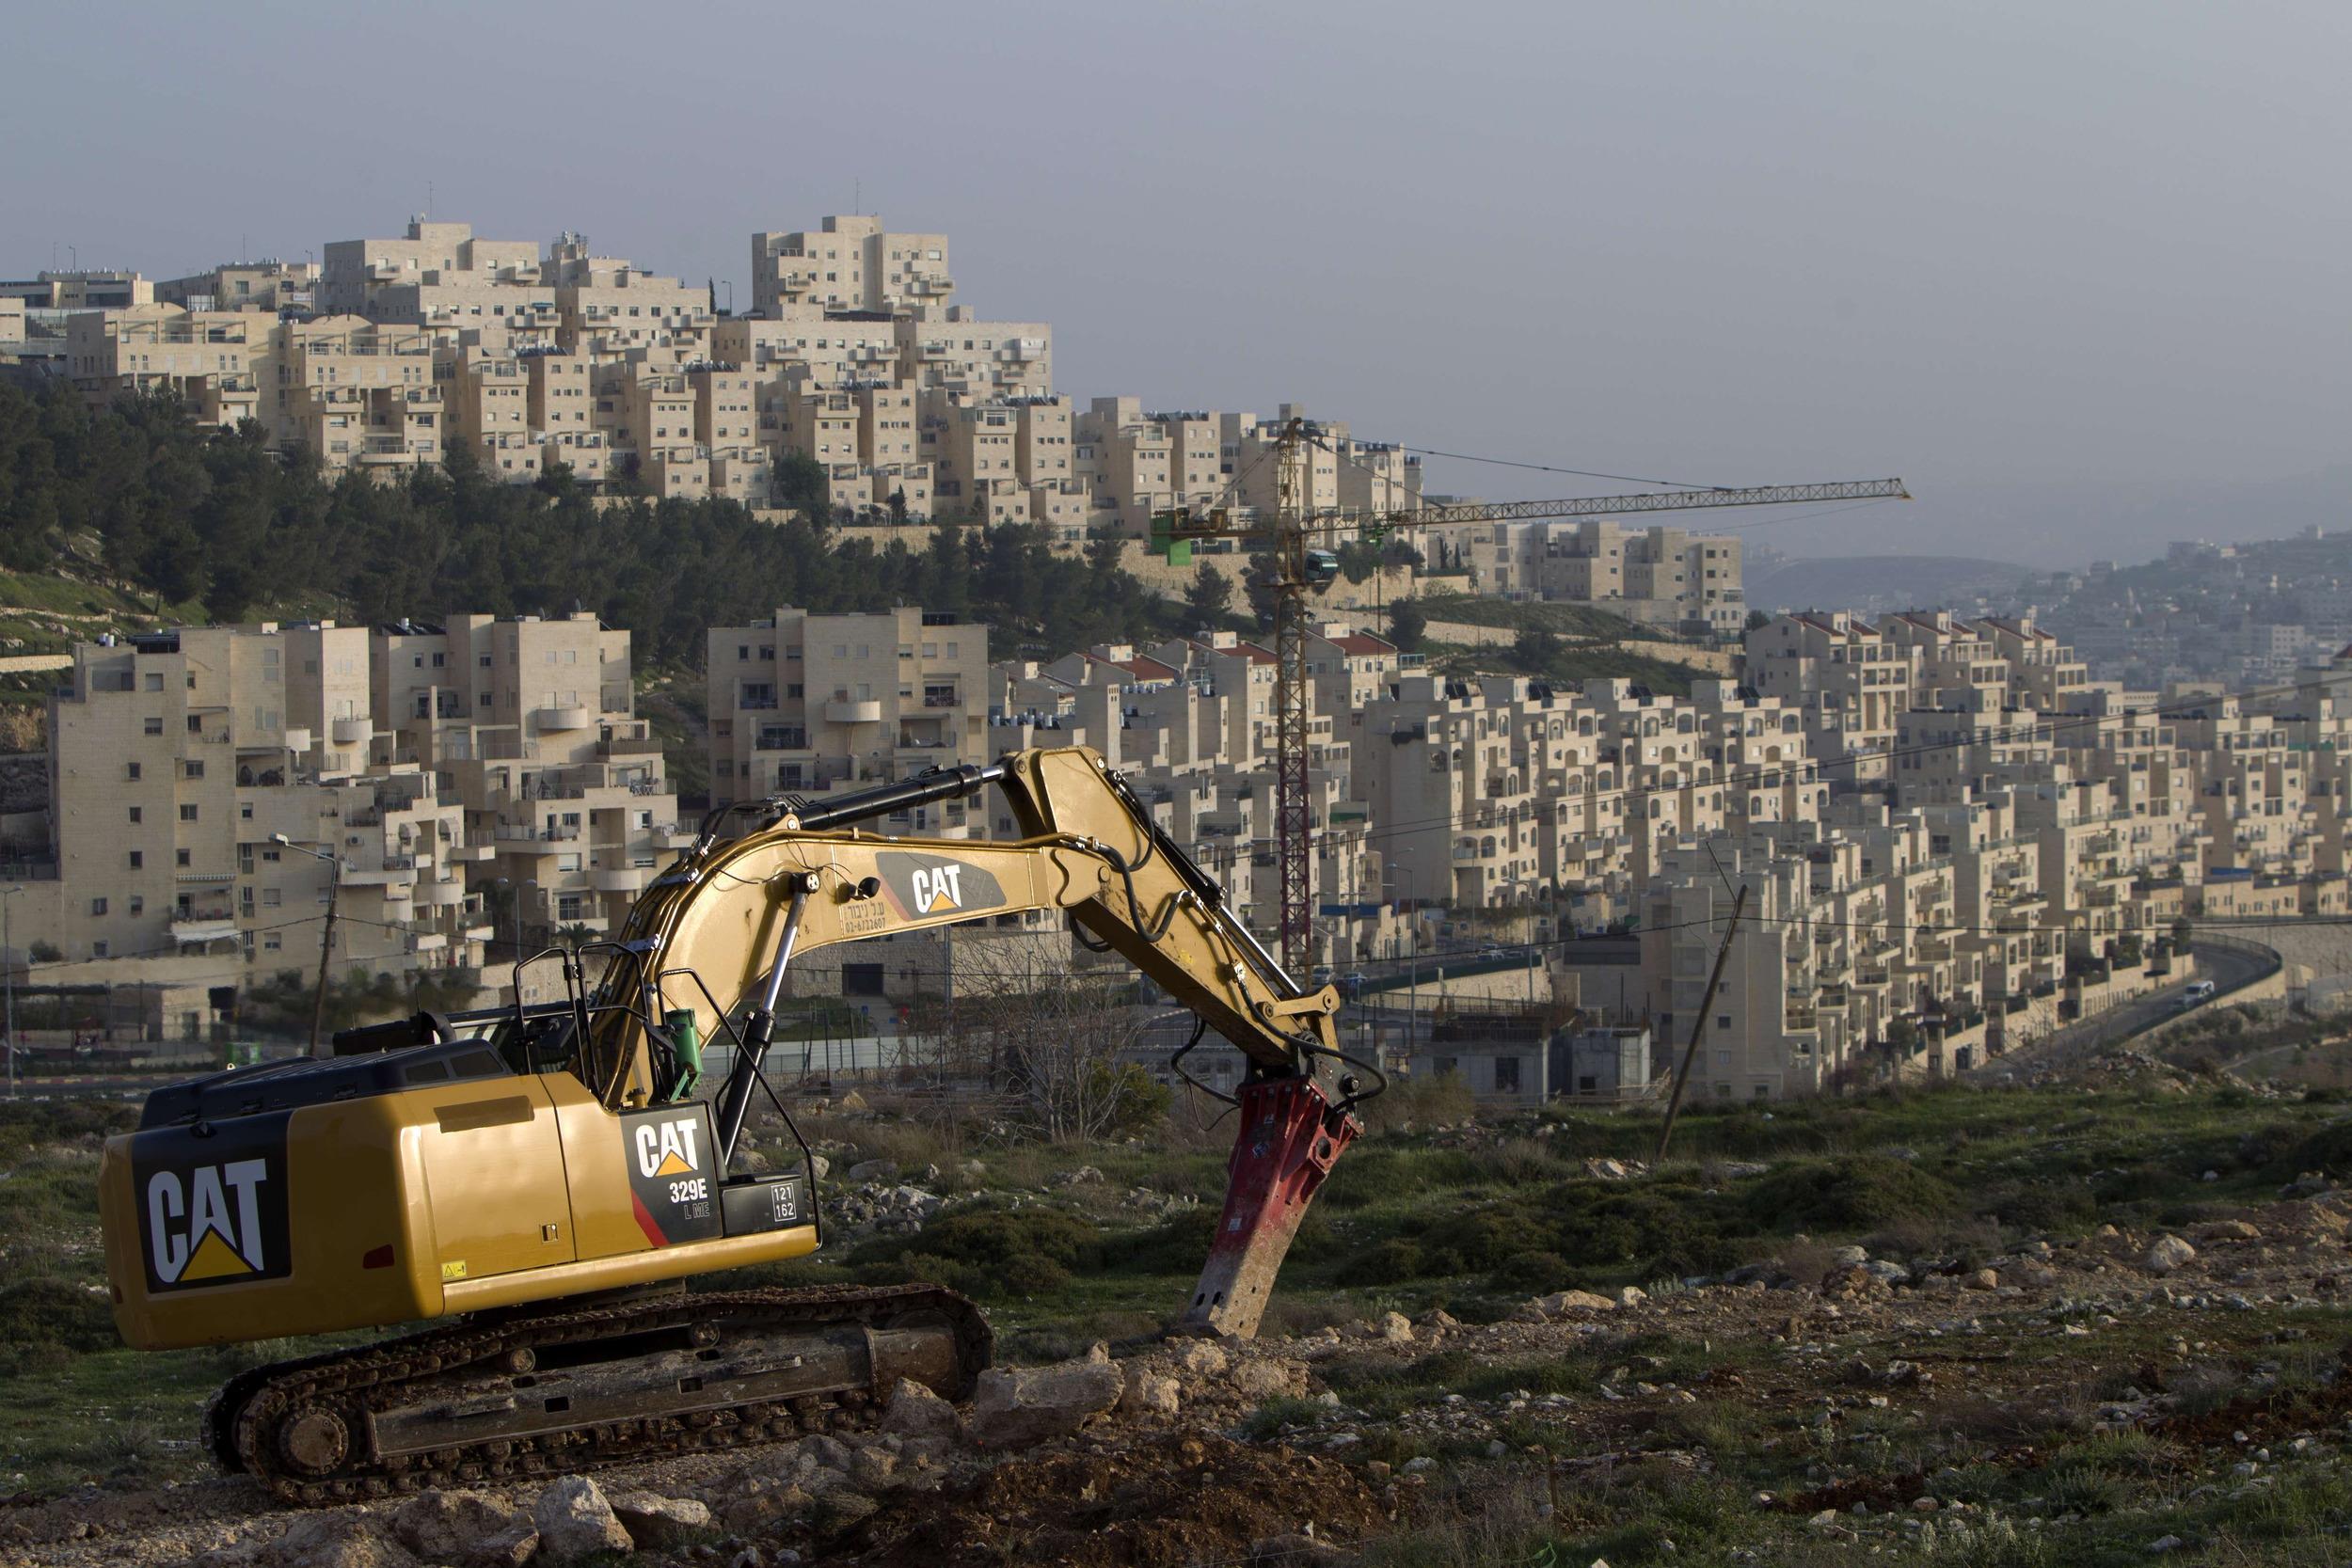 
Нетаньяху строит 1 060 домов в Восточном Иерусалиме, несмотря на критику